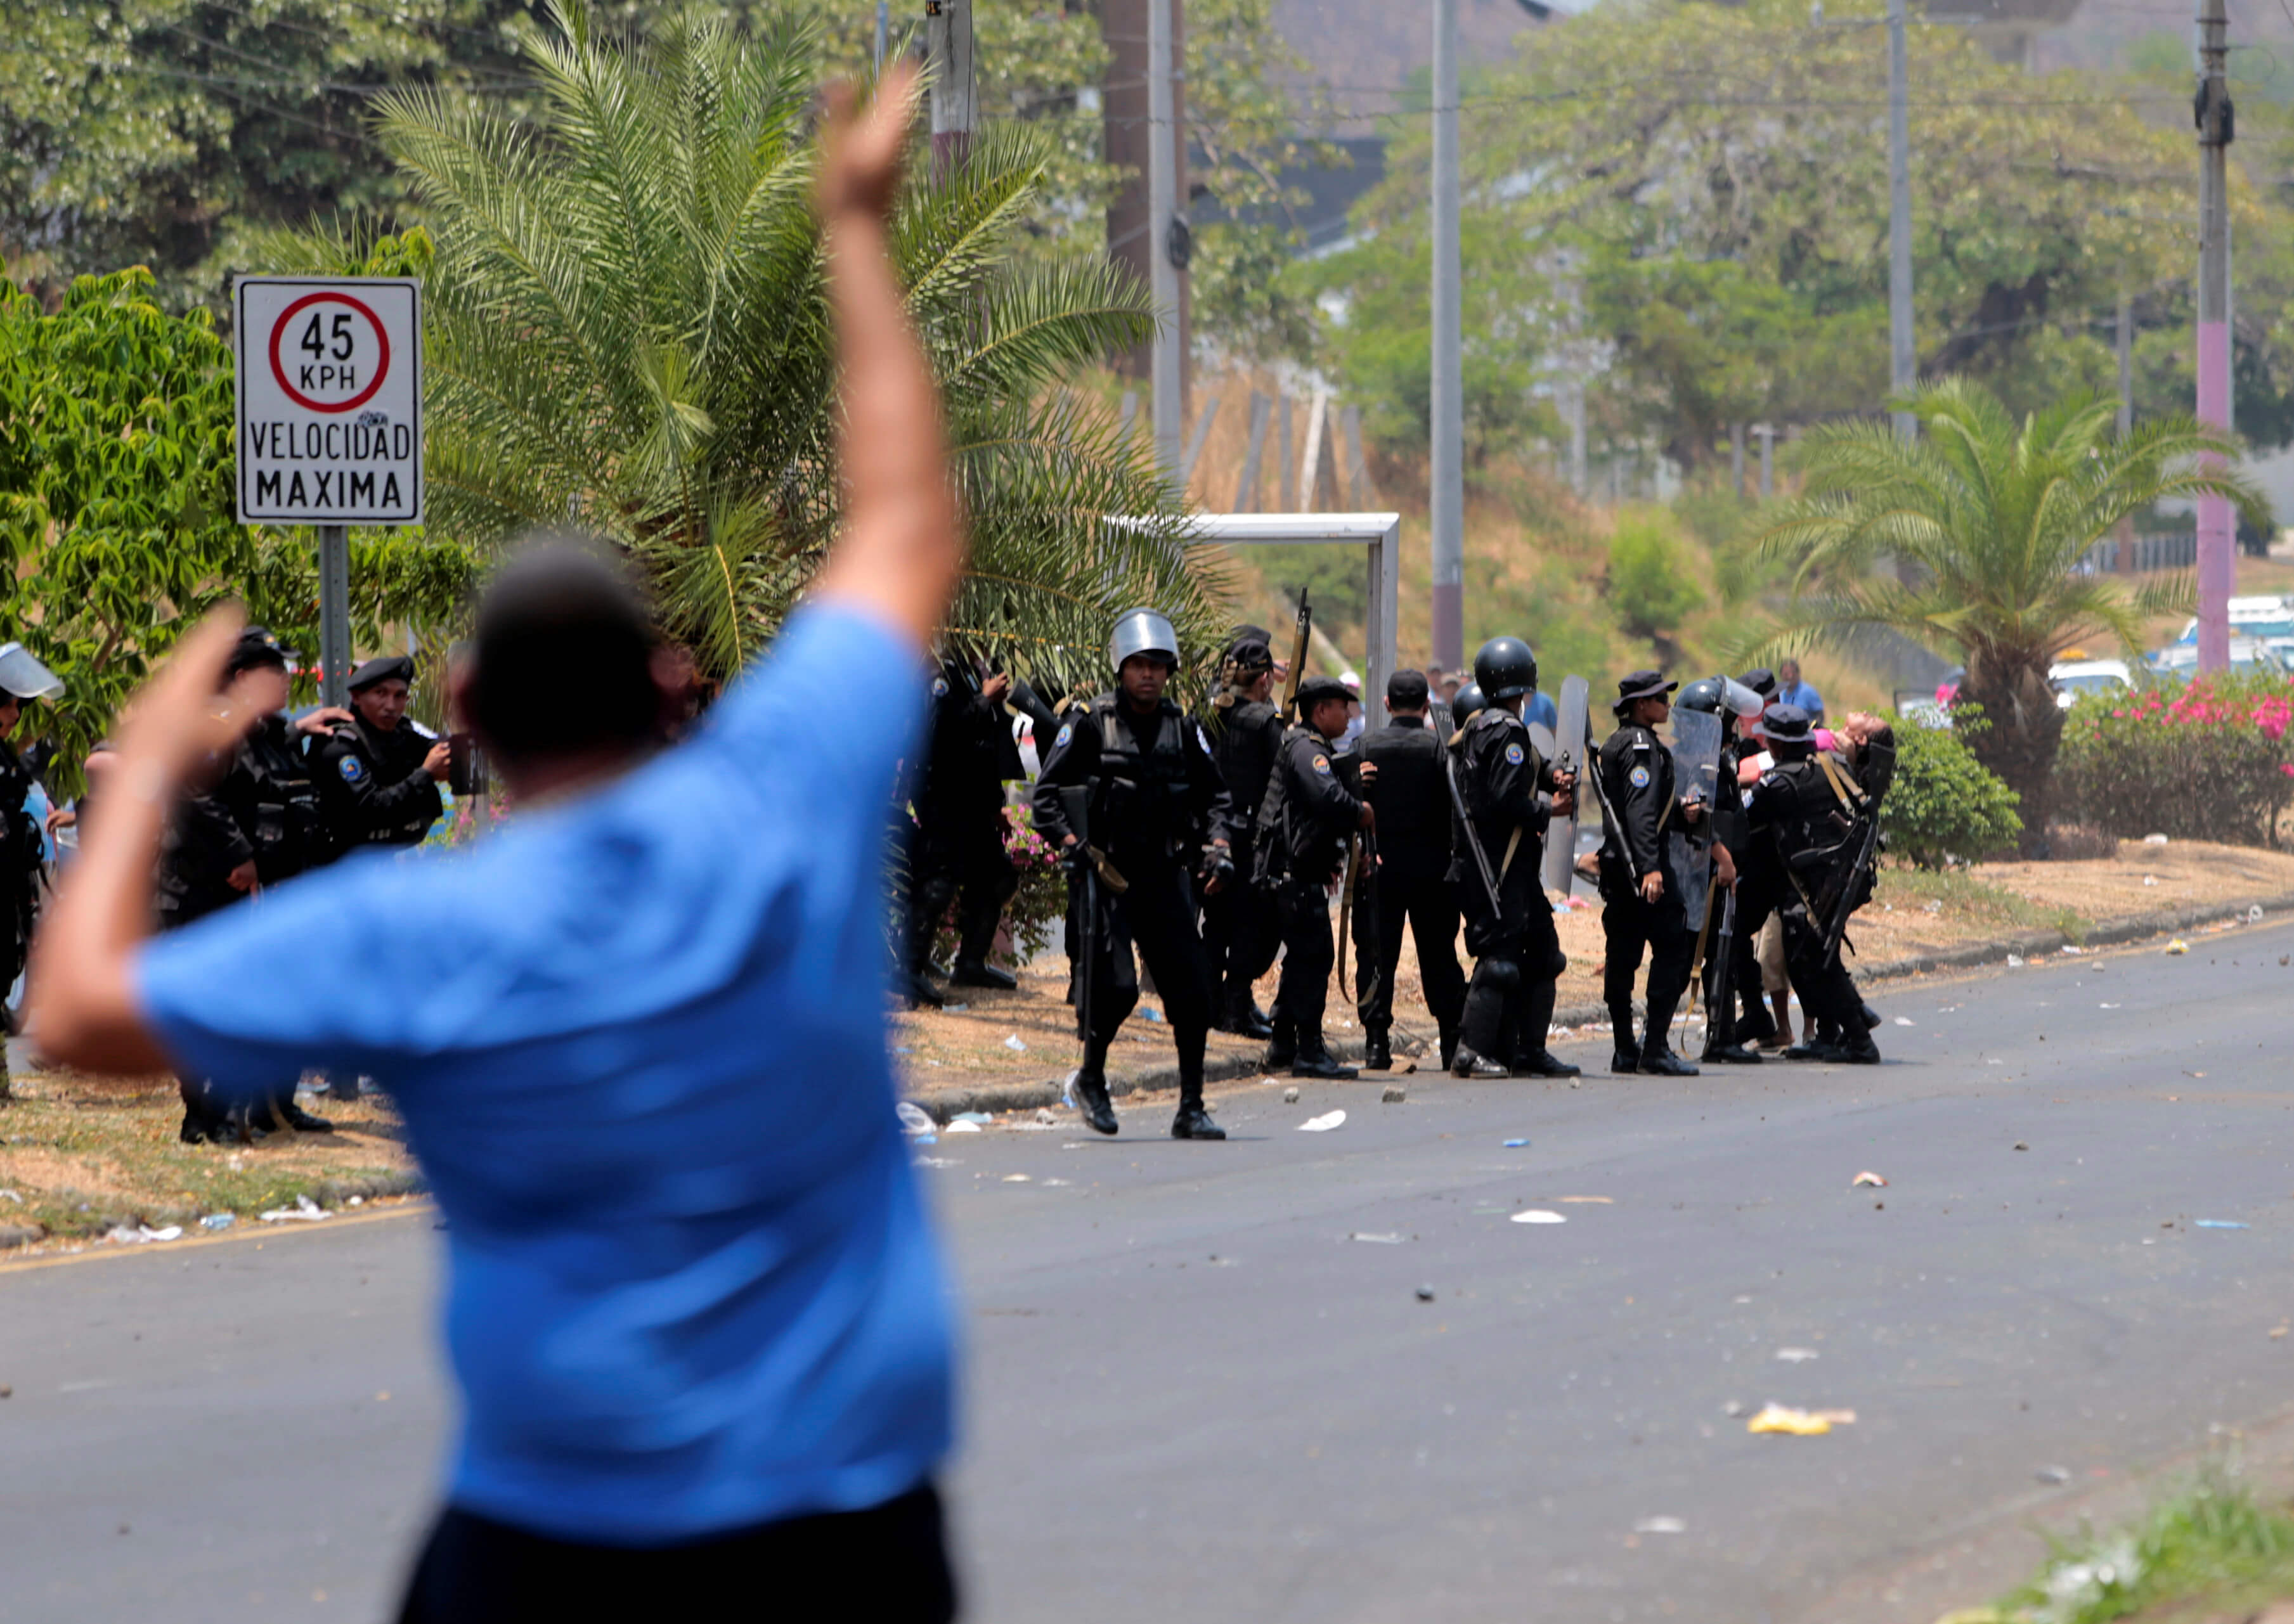 Foto: Policías se enfrentan contra manifestantes cerca de la Catedral Metropolitana de Managua, Nicaragua. El 19 de abril de 2019